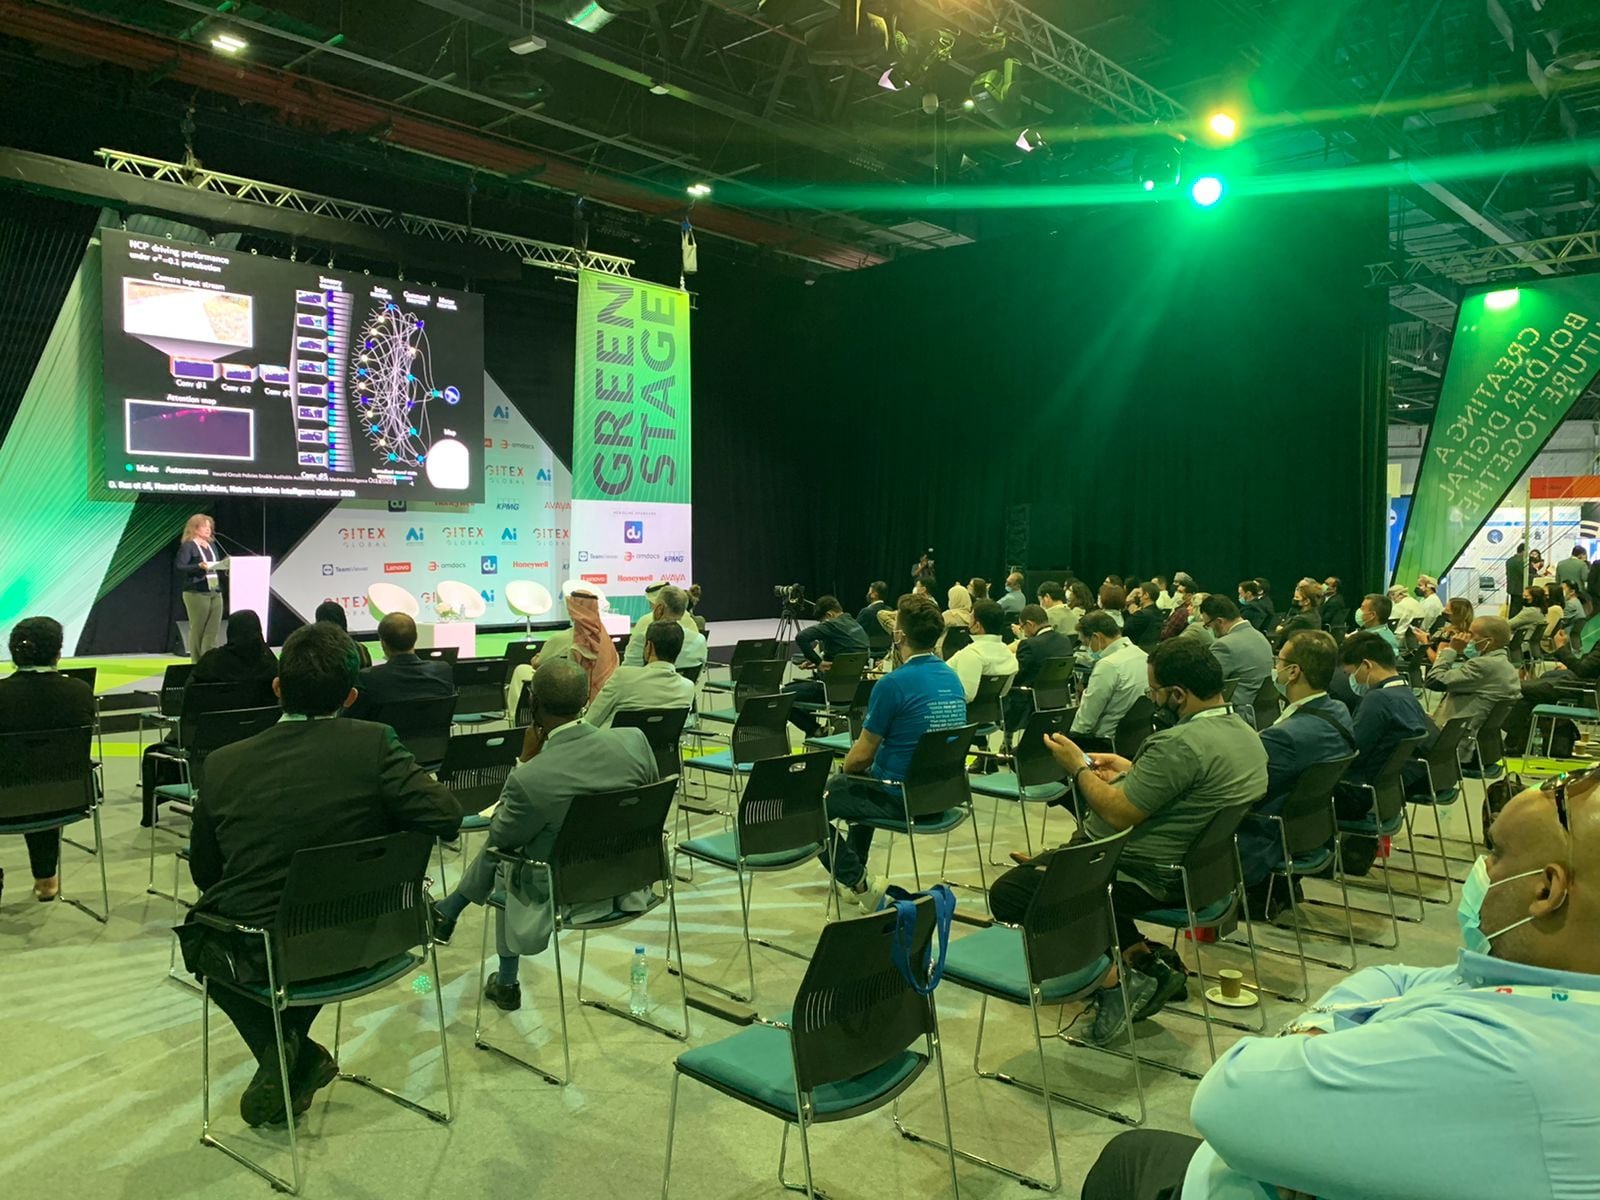 مؤتمر "جايتكس" دبي مستمر في يوم الثالث، بمشاركة "بكرا" وأكبر وأهم شركات التقنية في العالم-10